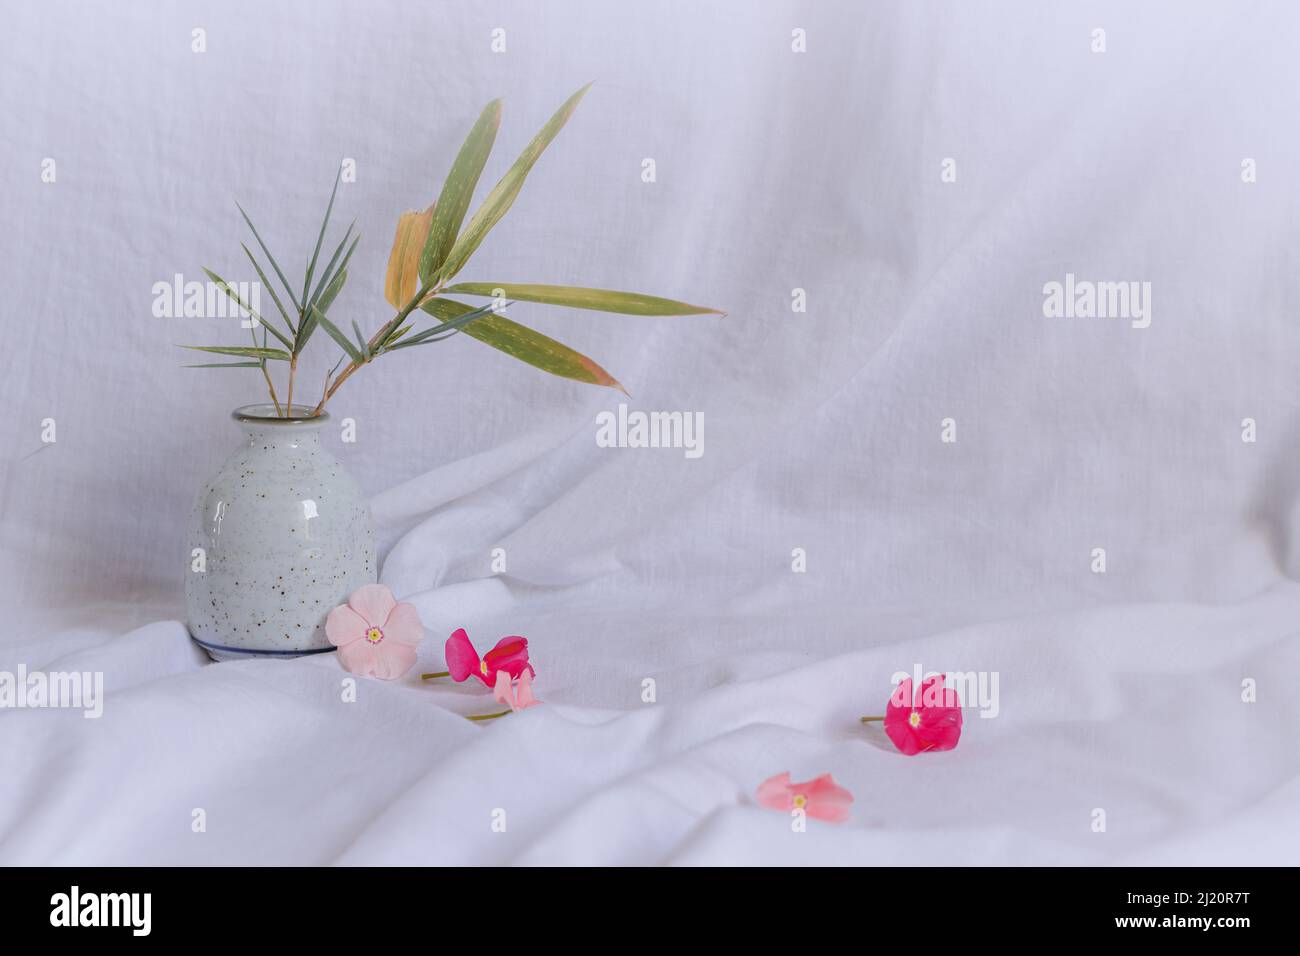 Komposition aus zierlichen Periwinkle-Blüten auf einem hellen weißen Hintergrund, die eine frische und ruhige Frühlingsthetik zeigen Stockfoto